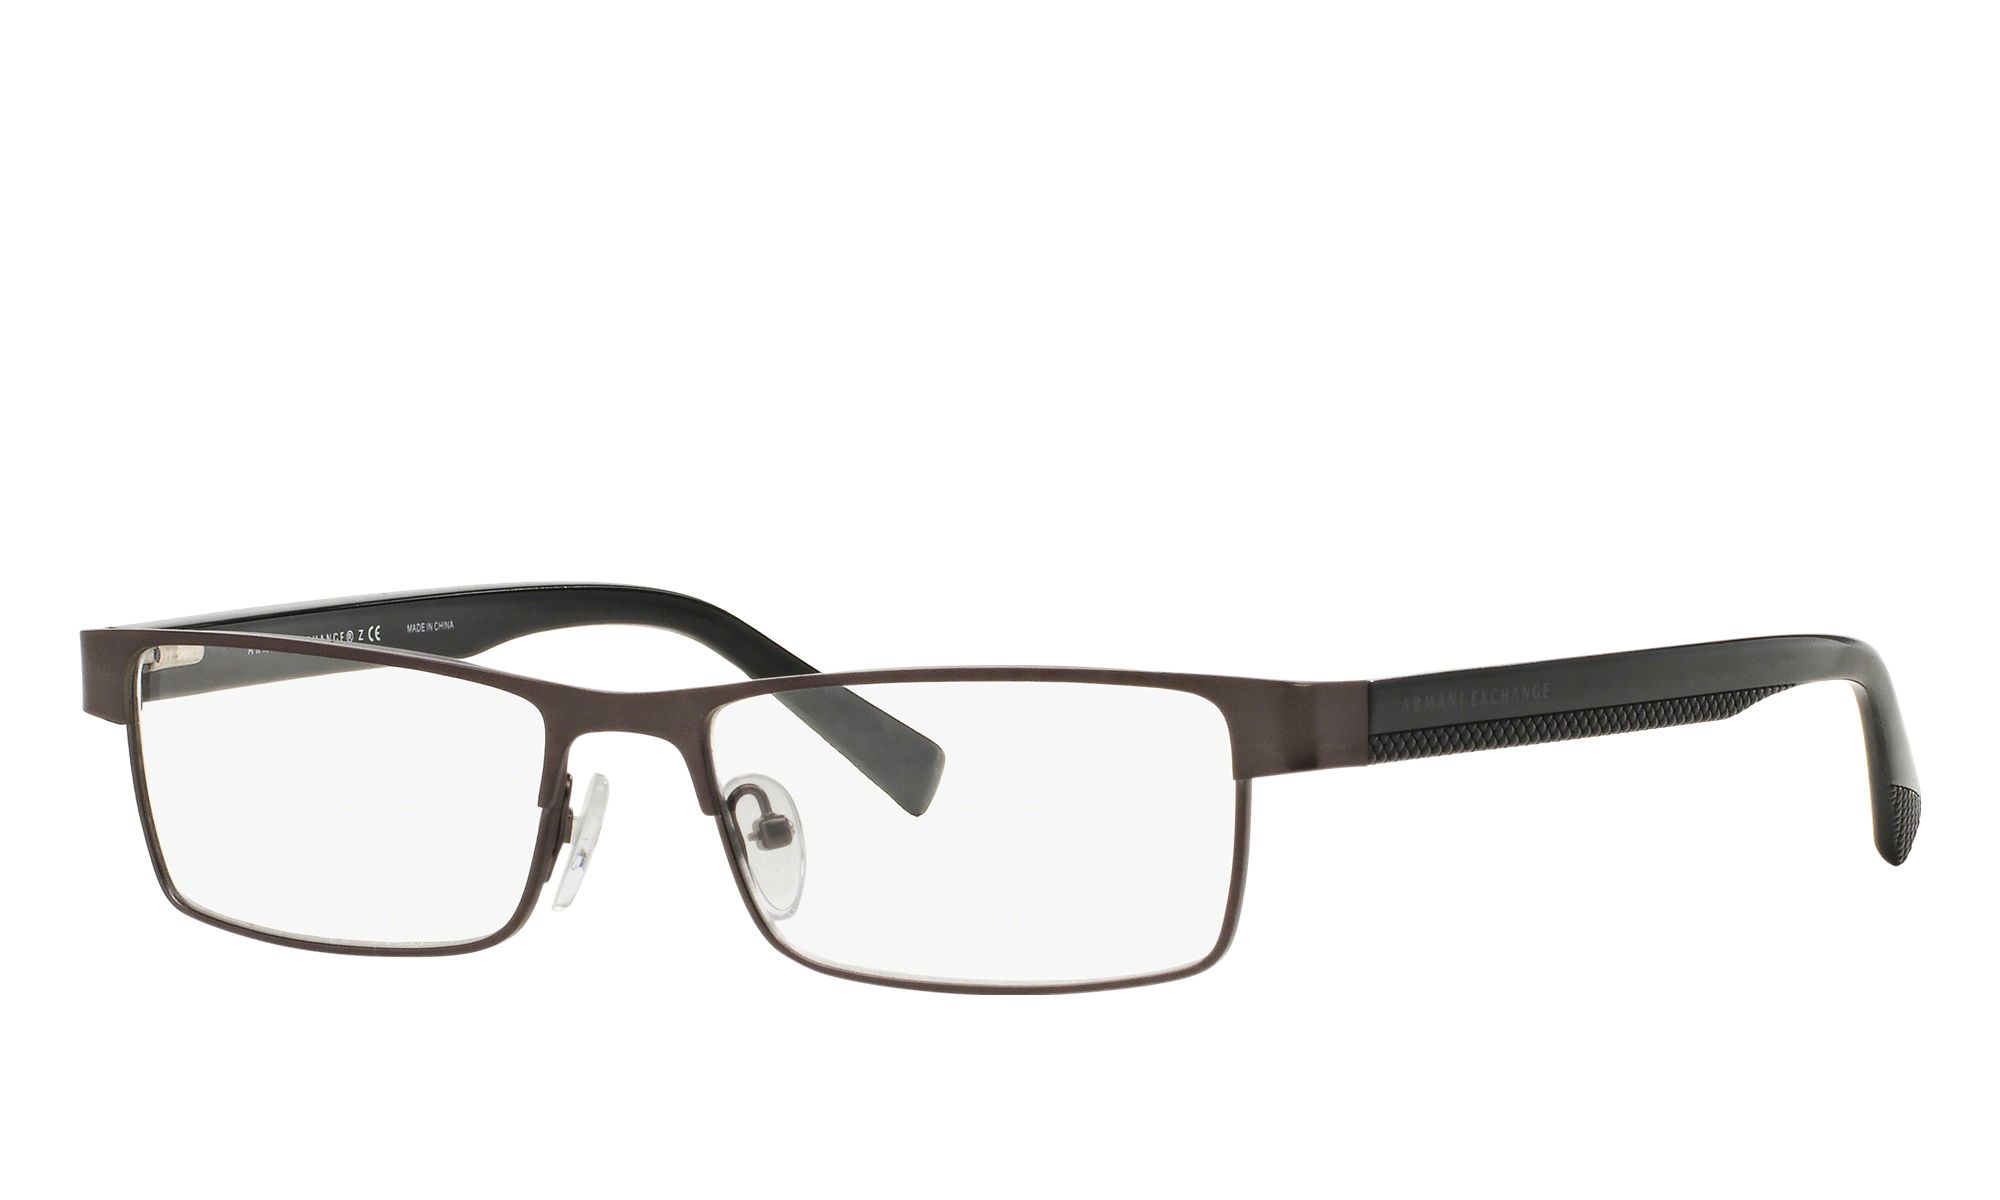 Armani Exchange AX1009 | Glasses.com® | Free Shipping